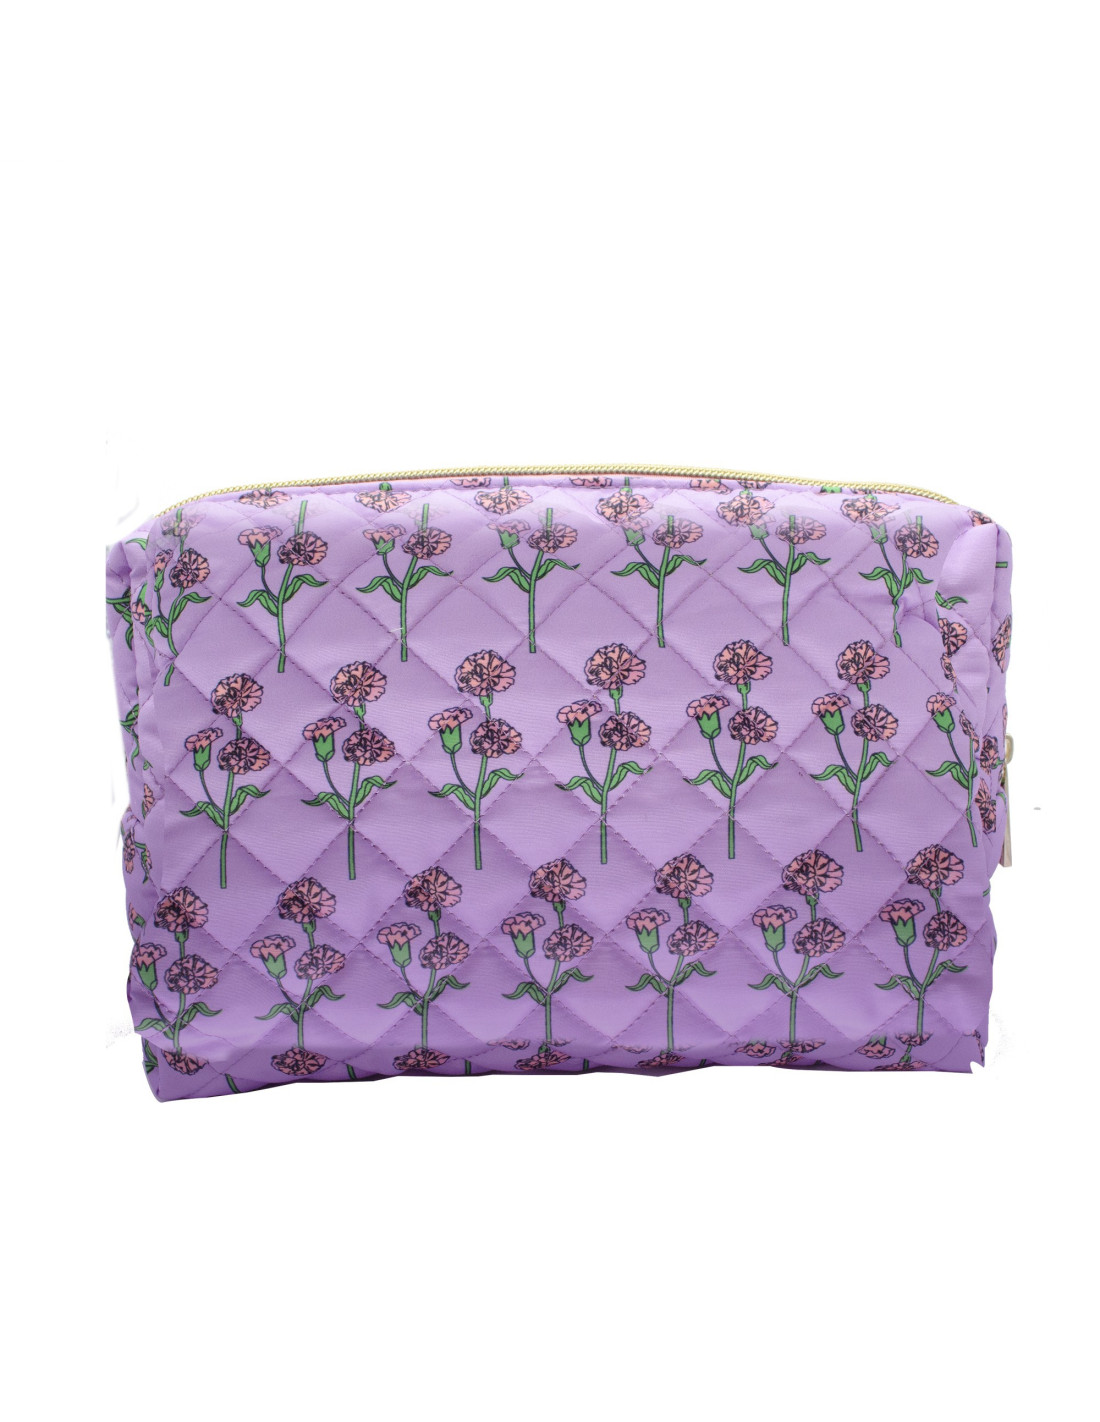 https://ponette.es/8234-thickbox_default/neceser-mujer-acolchado-lavanda-con-flores-rosas-y-verde.jpg